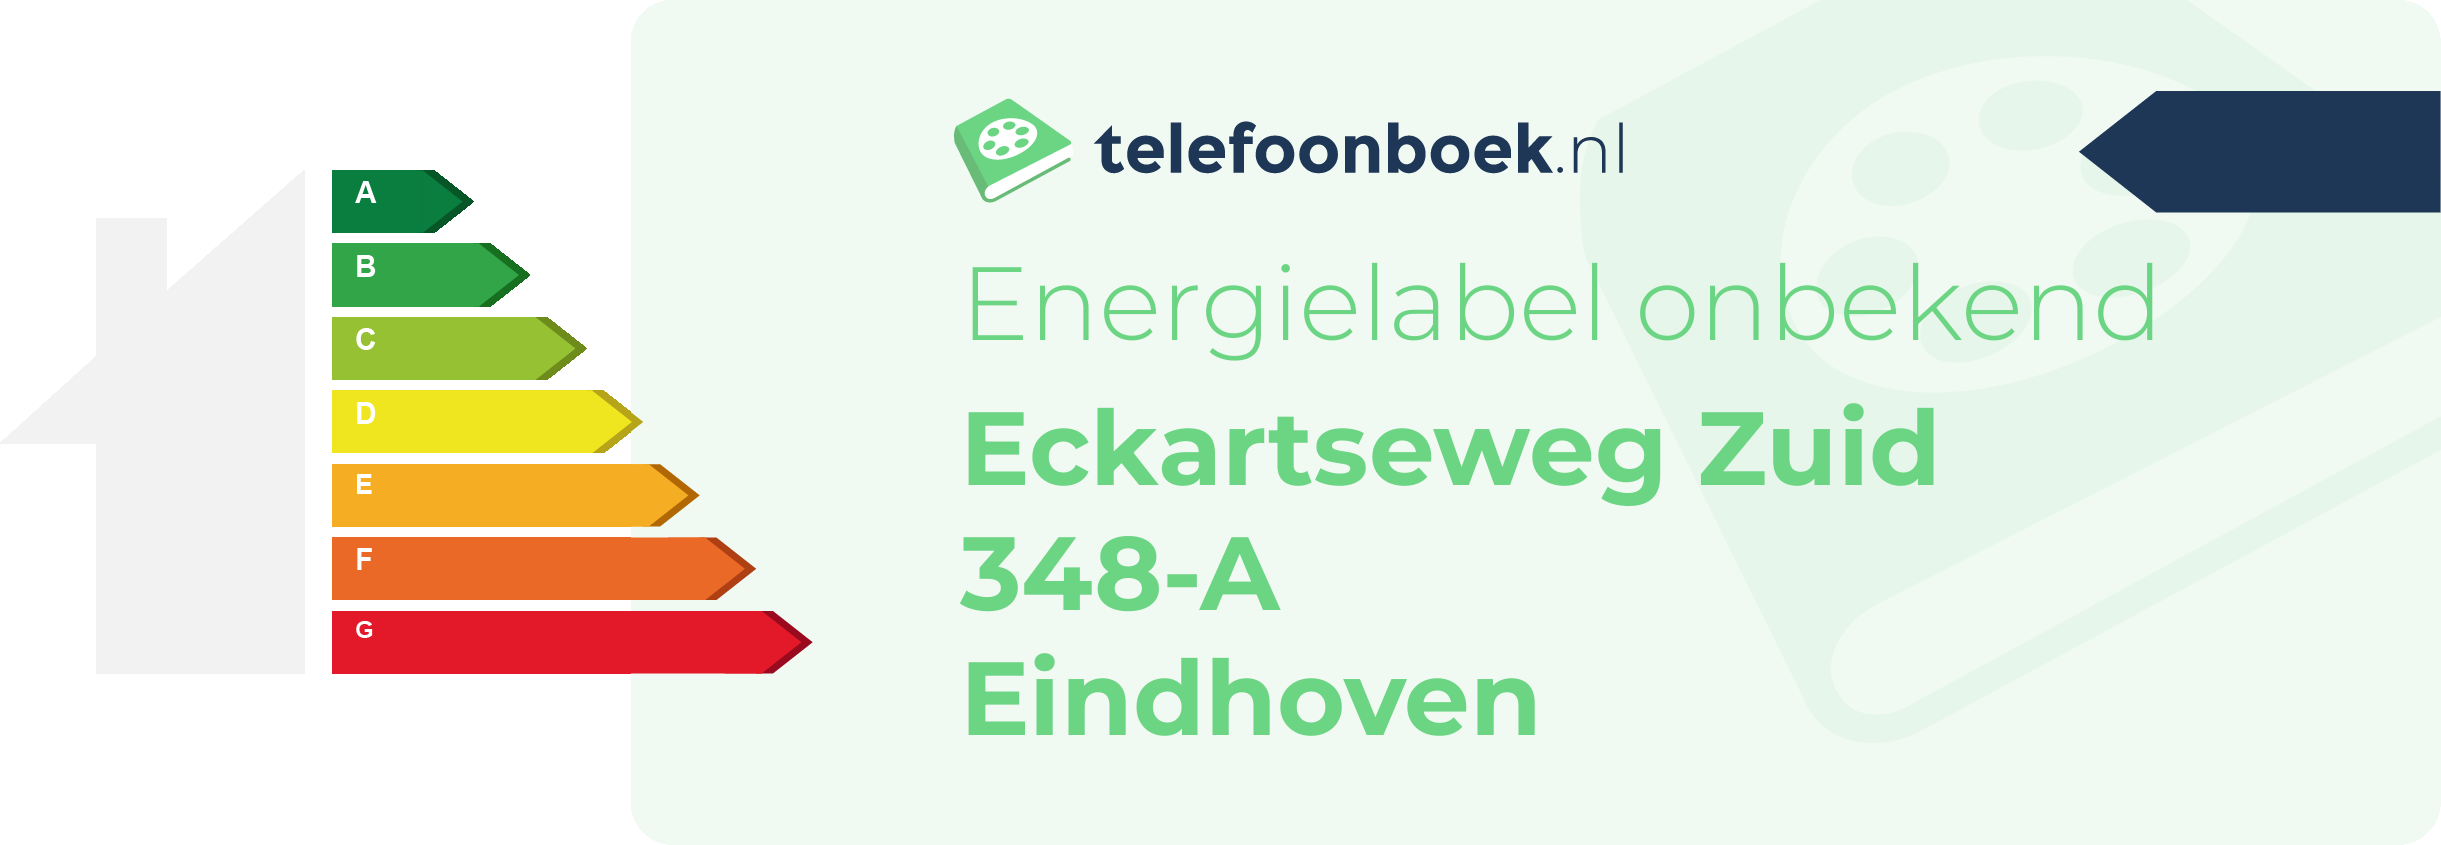 Energielabel Eckartseweg Zuid 348-A Eindhoven